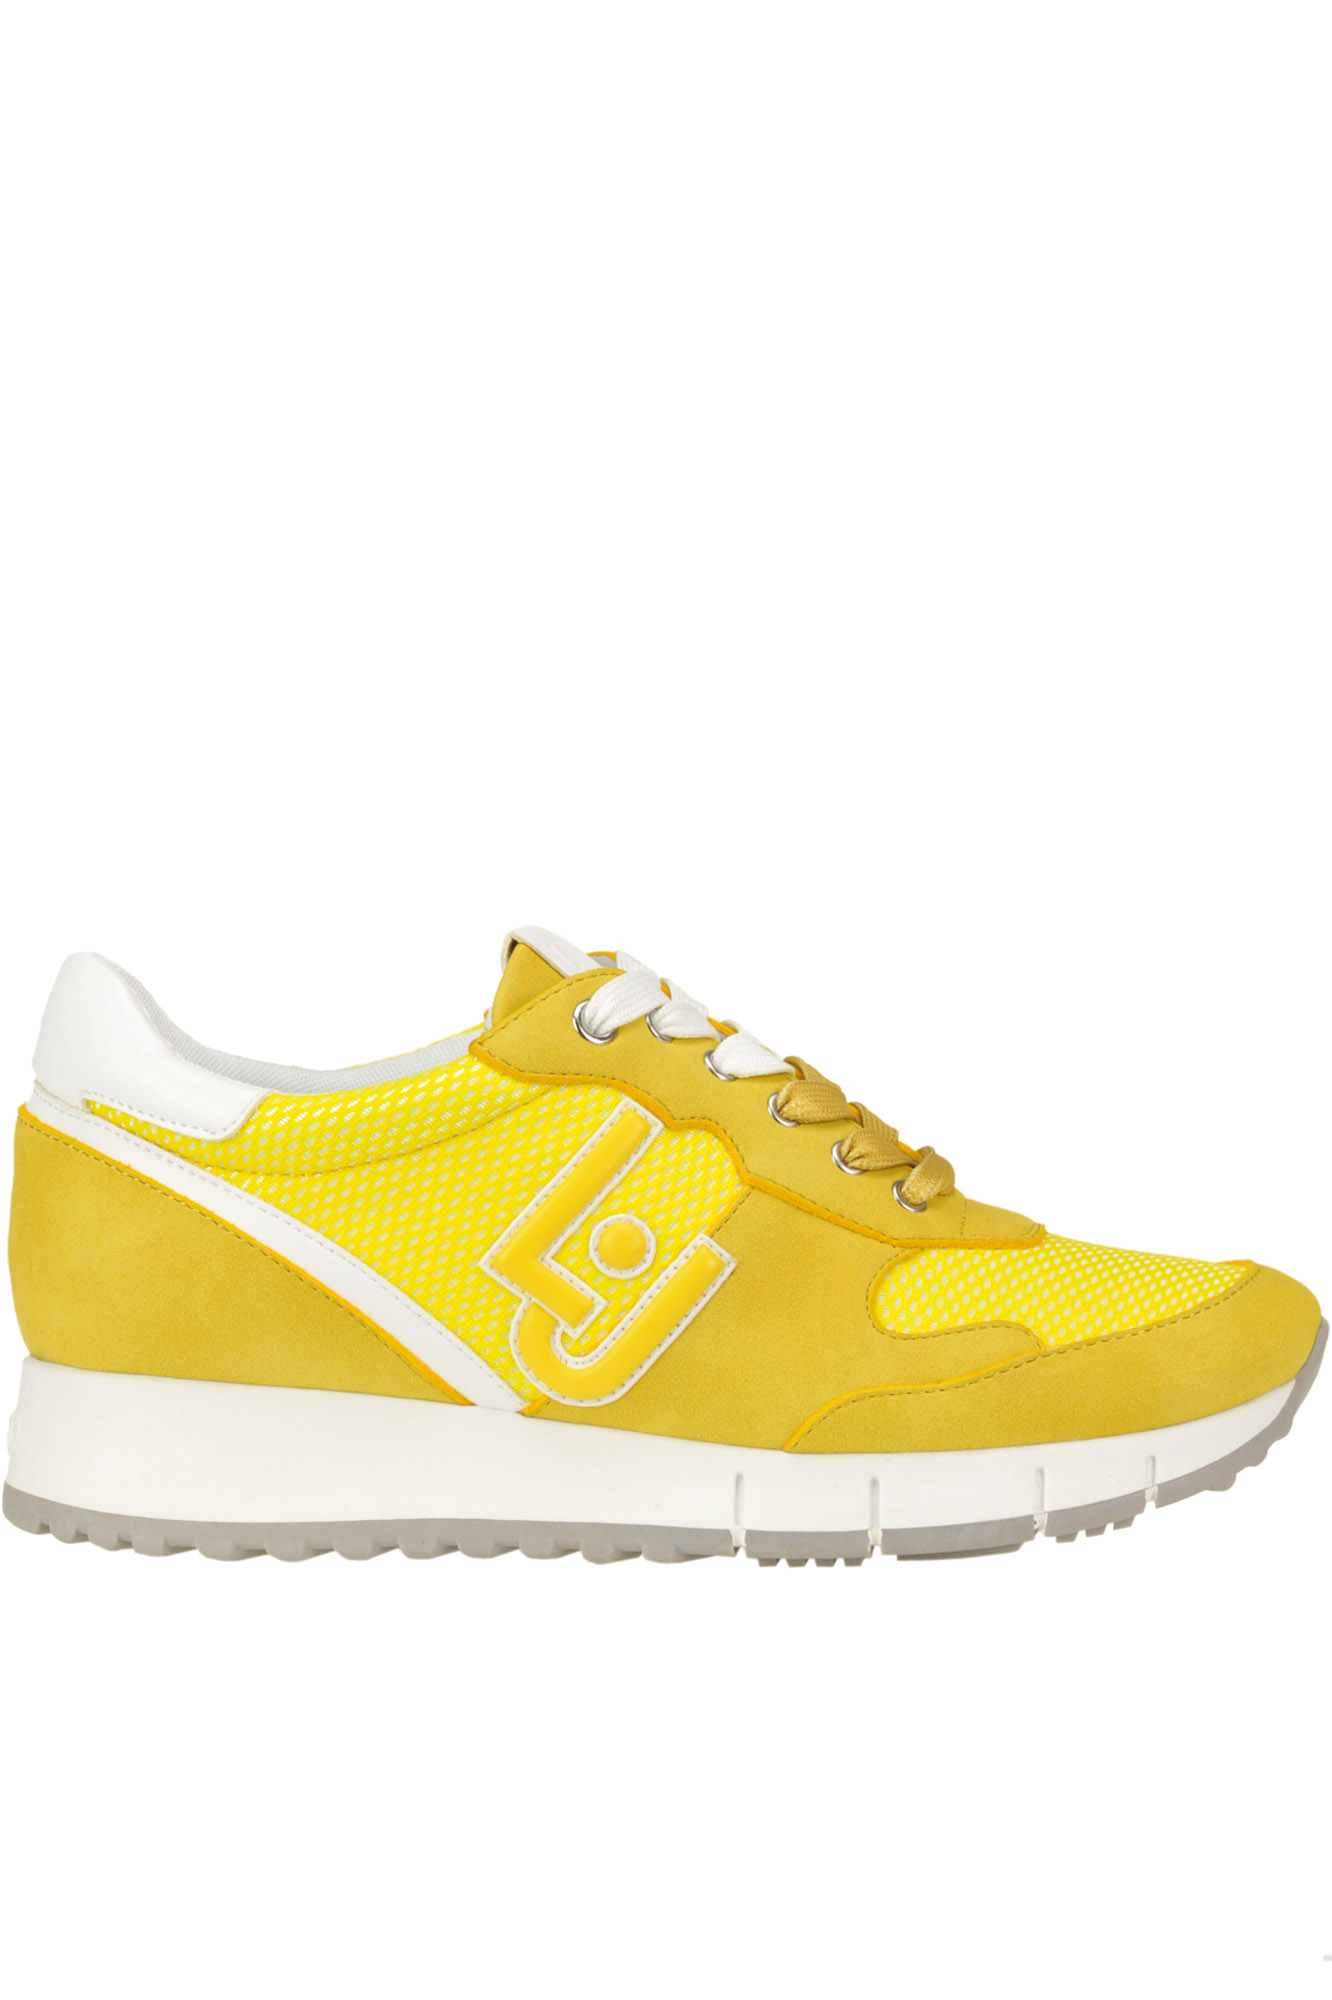 Liu •jo Gigi Running Trainers In Yellow